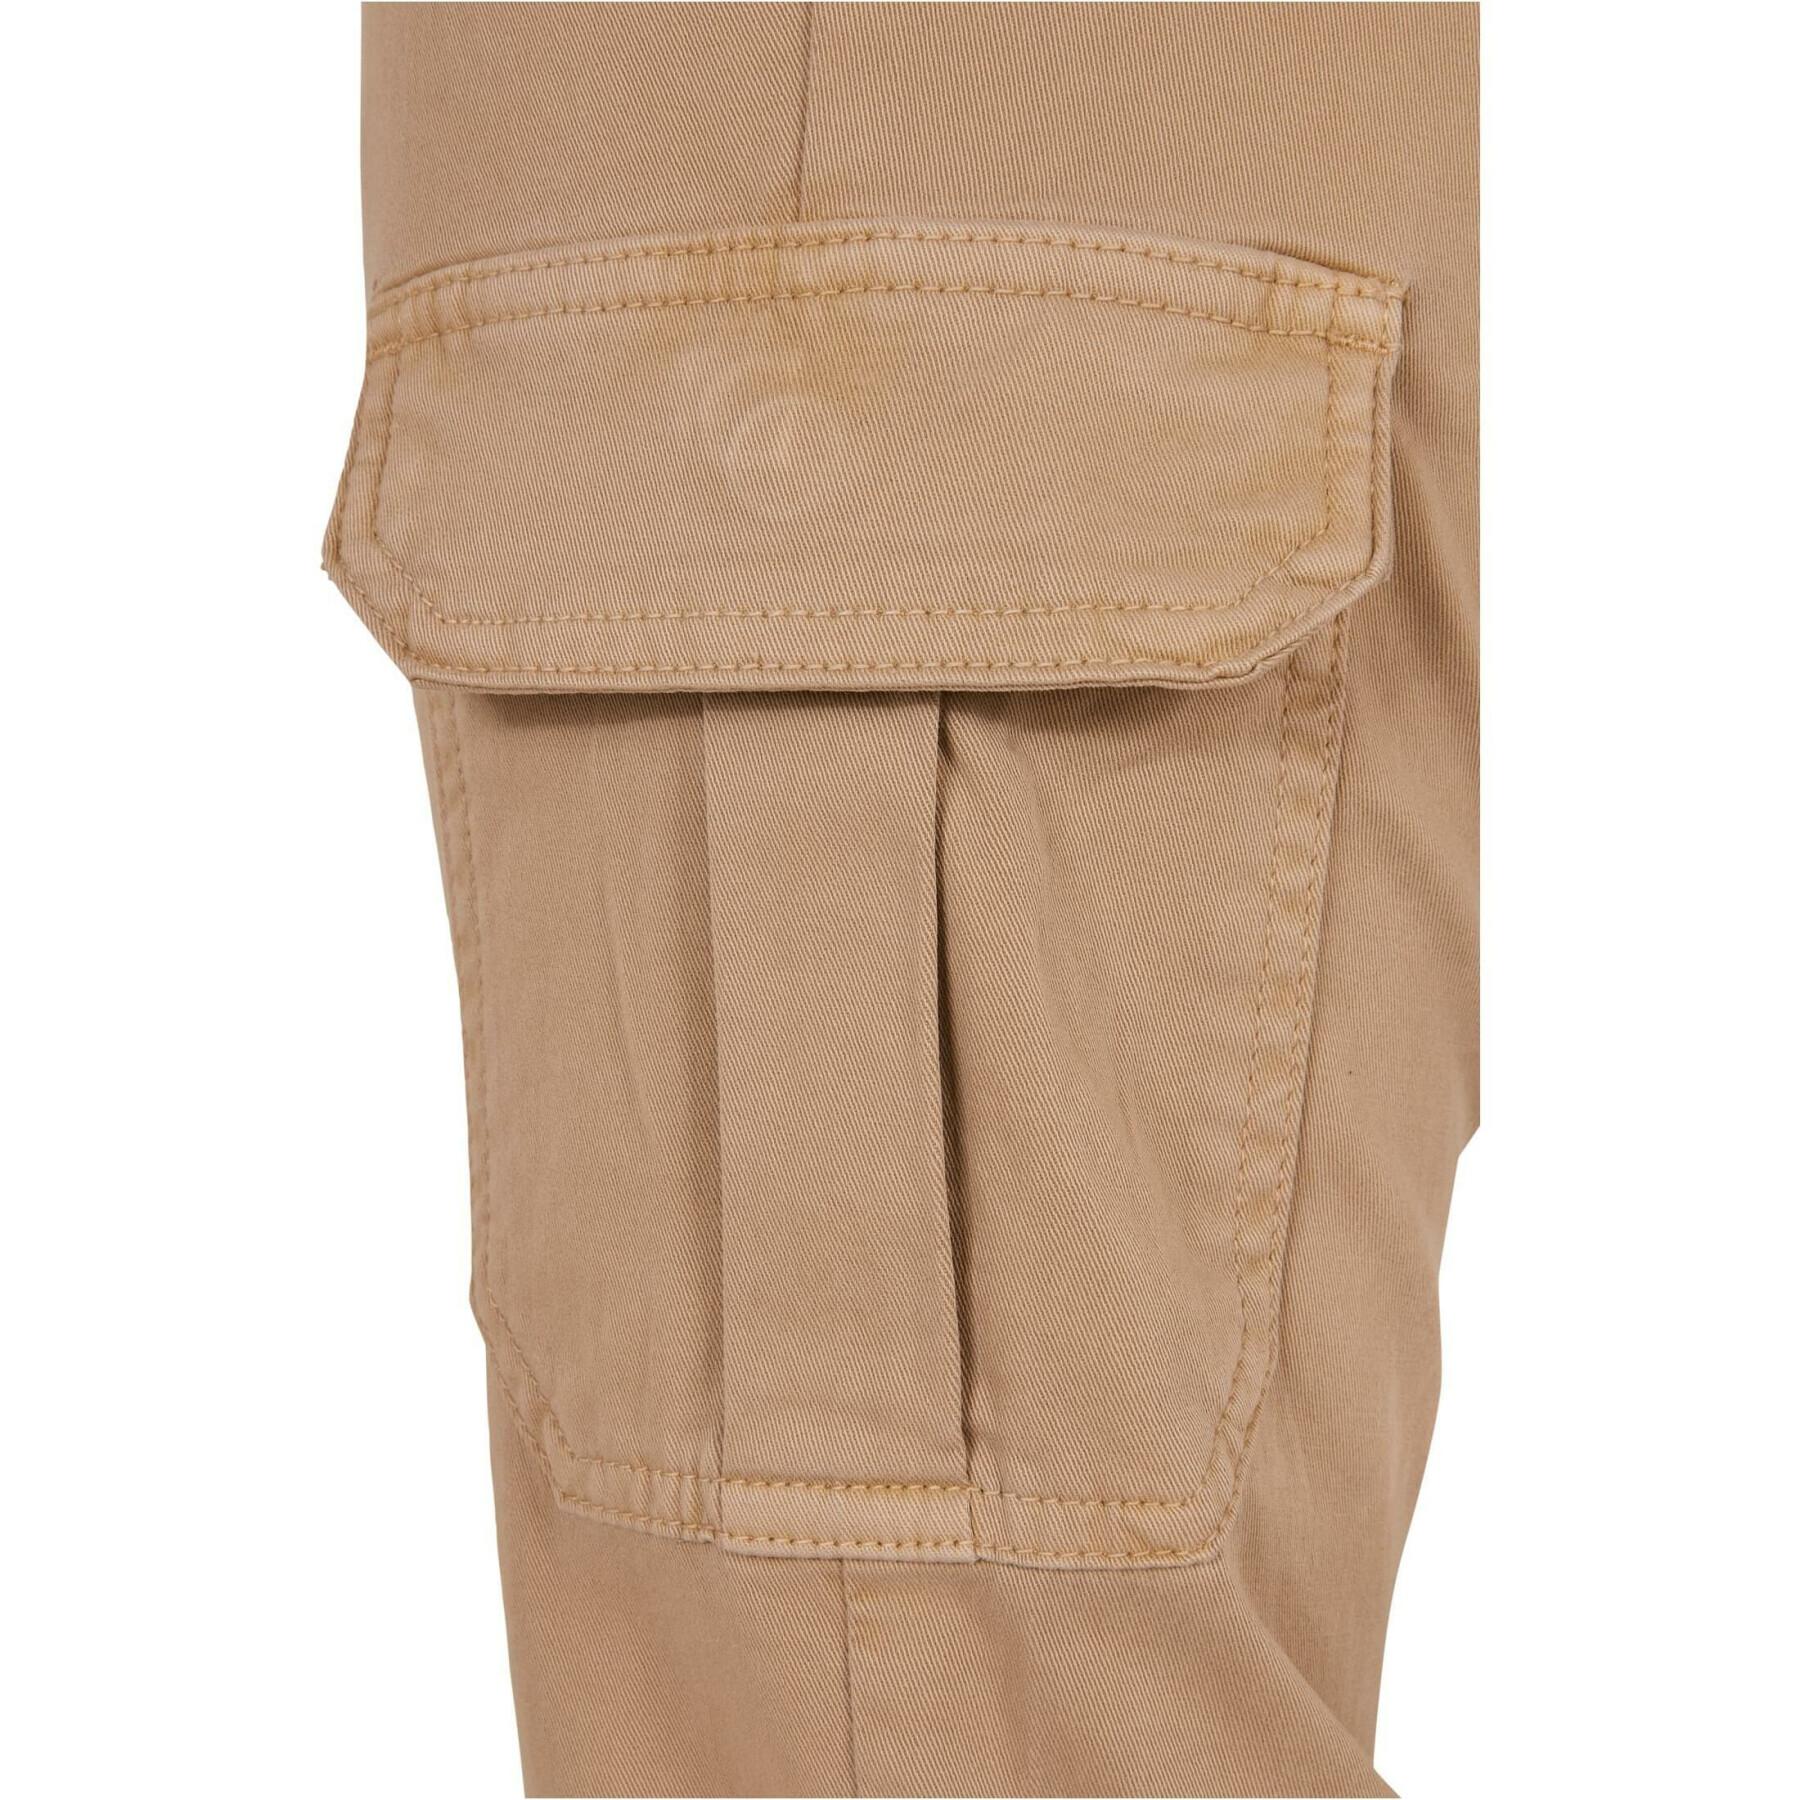 Women's high waist cargo pants Urban Classics